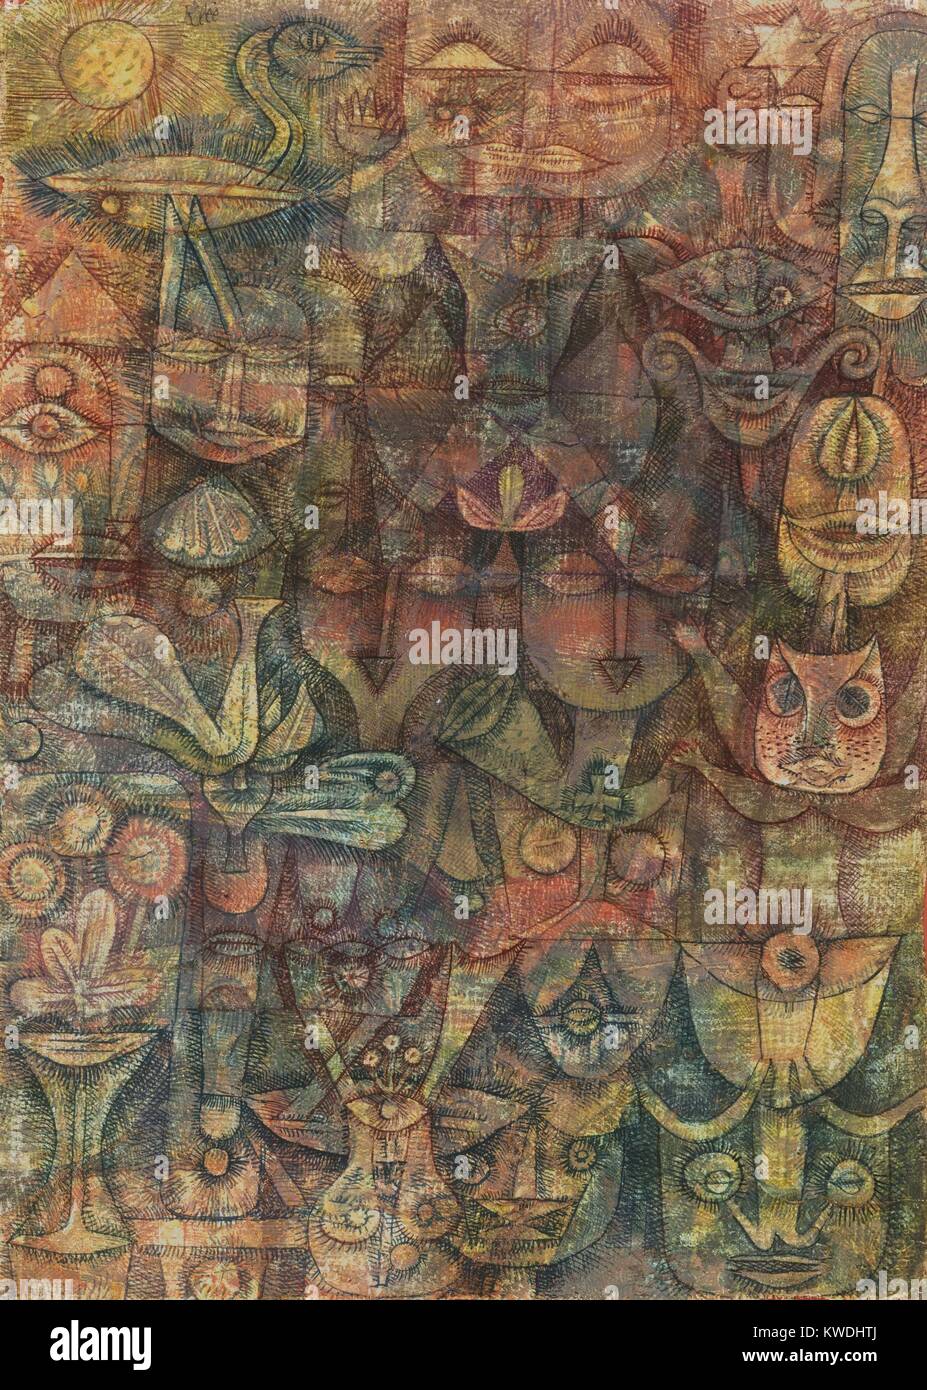 STANGE GARTEN, von Paul Klee, 1923, Schweizer Malerei, Aquarell, Gouache und Tinte. Menschliche und tierische Gesichter, isolierte Gesichtszüge, und Pflanzen sind mit der Linie und Schraffur gezeichnet. Farben sind in weichen Bereichen angewendet, manchmal innerhalb der Formulare und andere, unabhängig von der Form (BSLOC 2017 7 32) Stockfoto